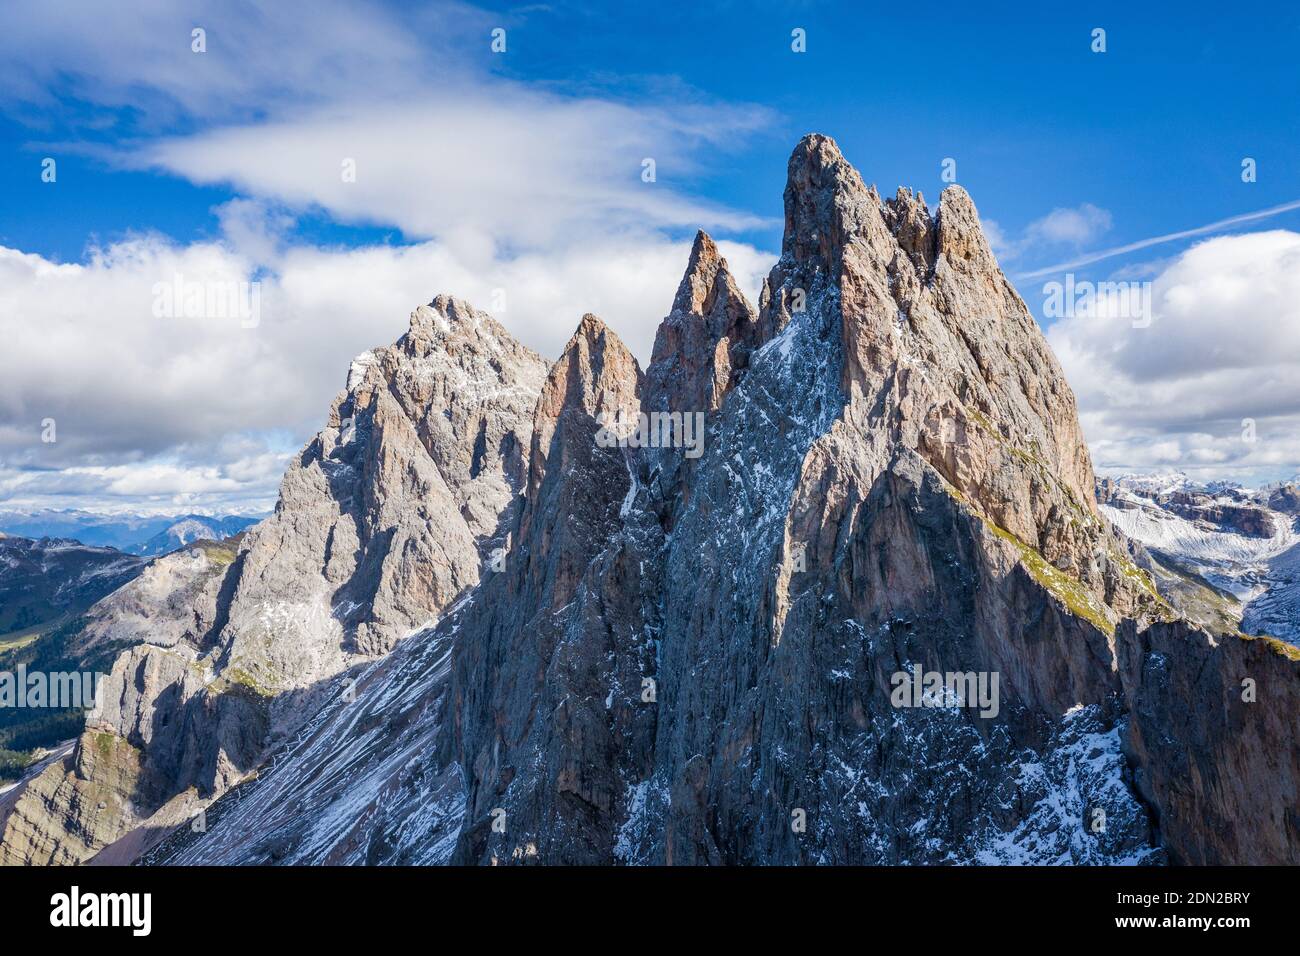 vista de los picos de la cadena montañosa del grupo geisler cubierto de nieve Foto de stock